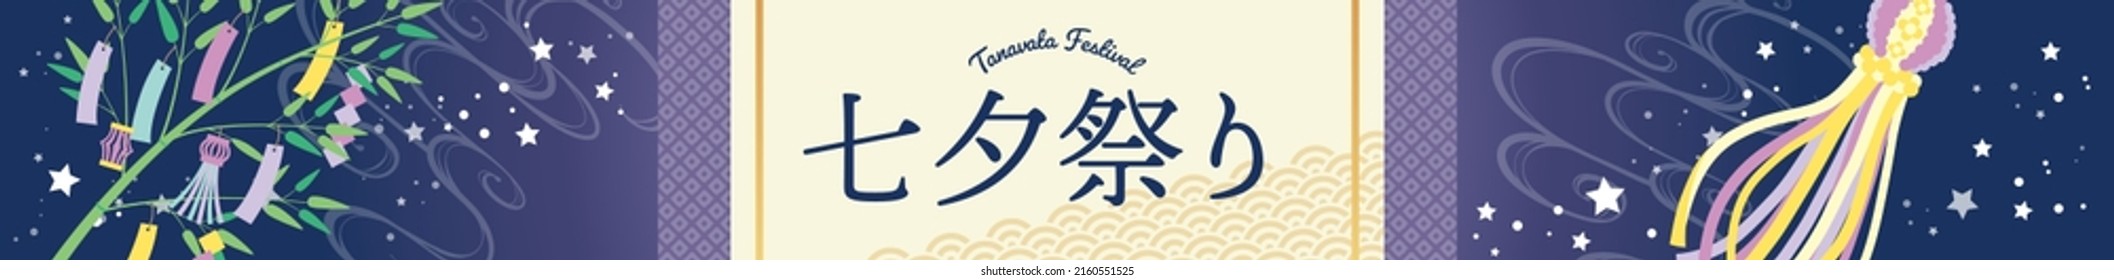 Illustration poster for Tanabata Festival
Translation: Tanabata Festival